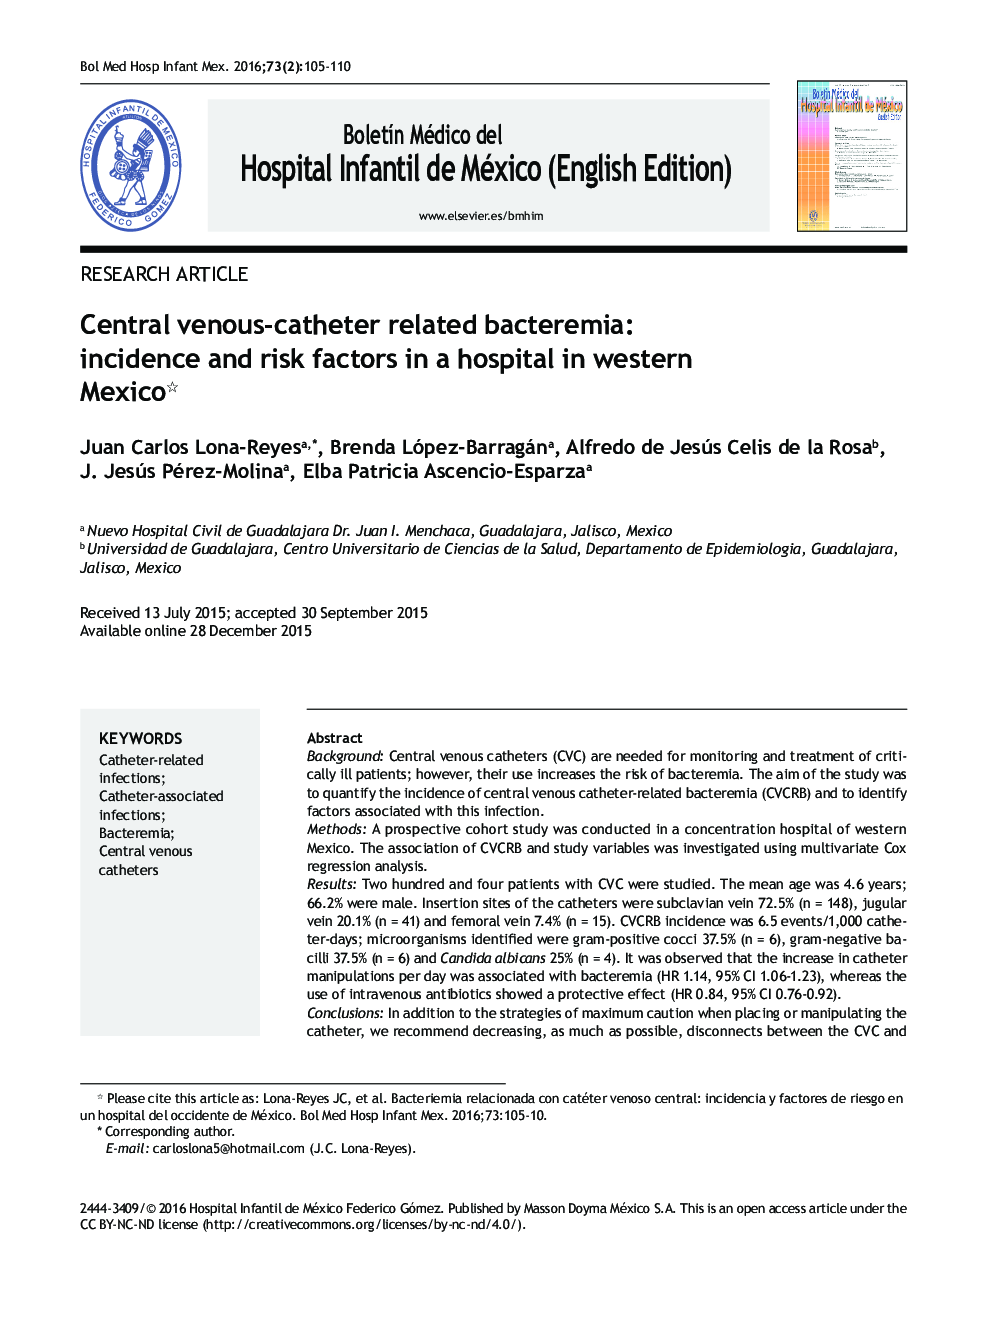 باکتریایی مرتبط با کاتتر مرکزی: شیوع و عوامل خطر در یک بیمارستان در مکزیک غربی 